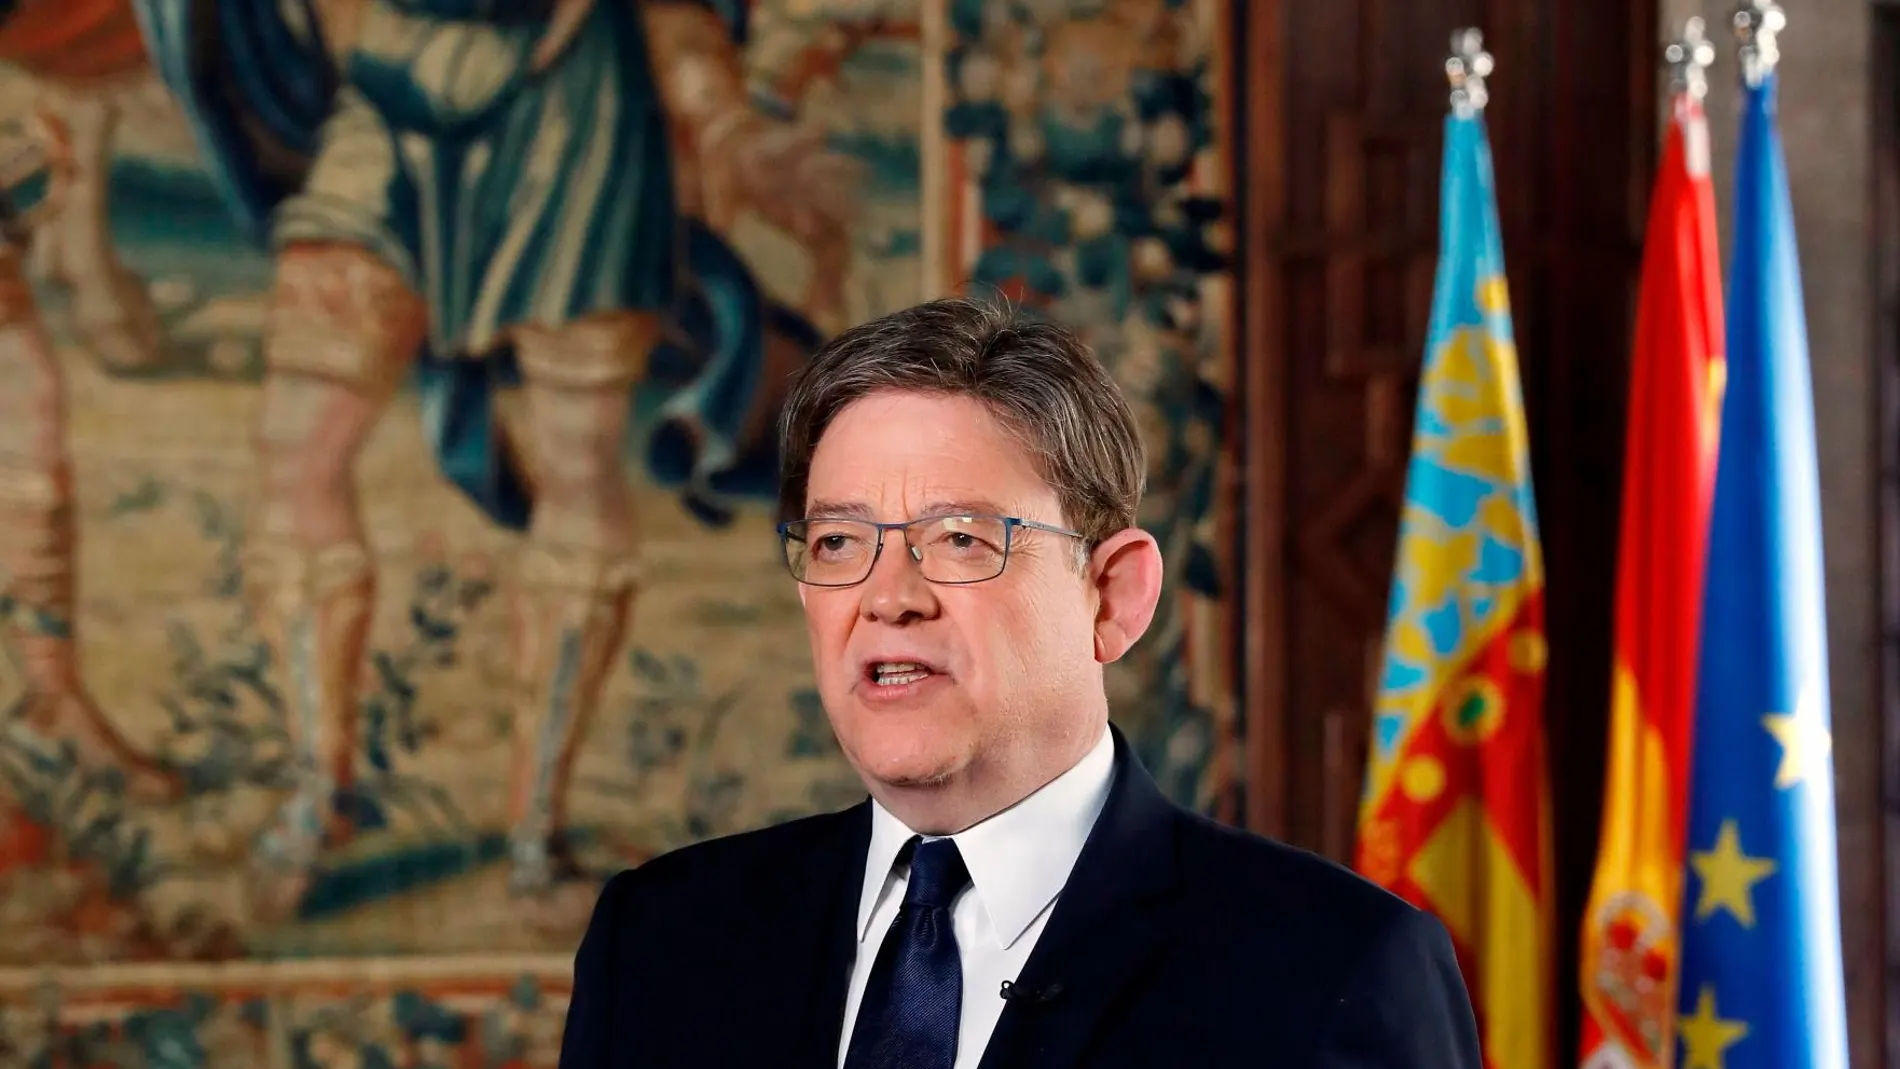 El presidente de la Generalitat, Ximo Puig, durante la grabación del discurso en su despacho. La intervención de Año Nuevo se emitió el pasado día 31 de diciembre